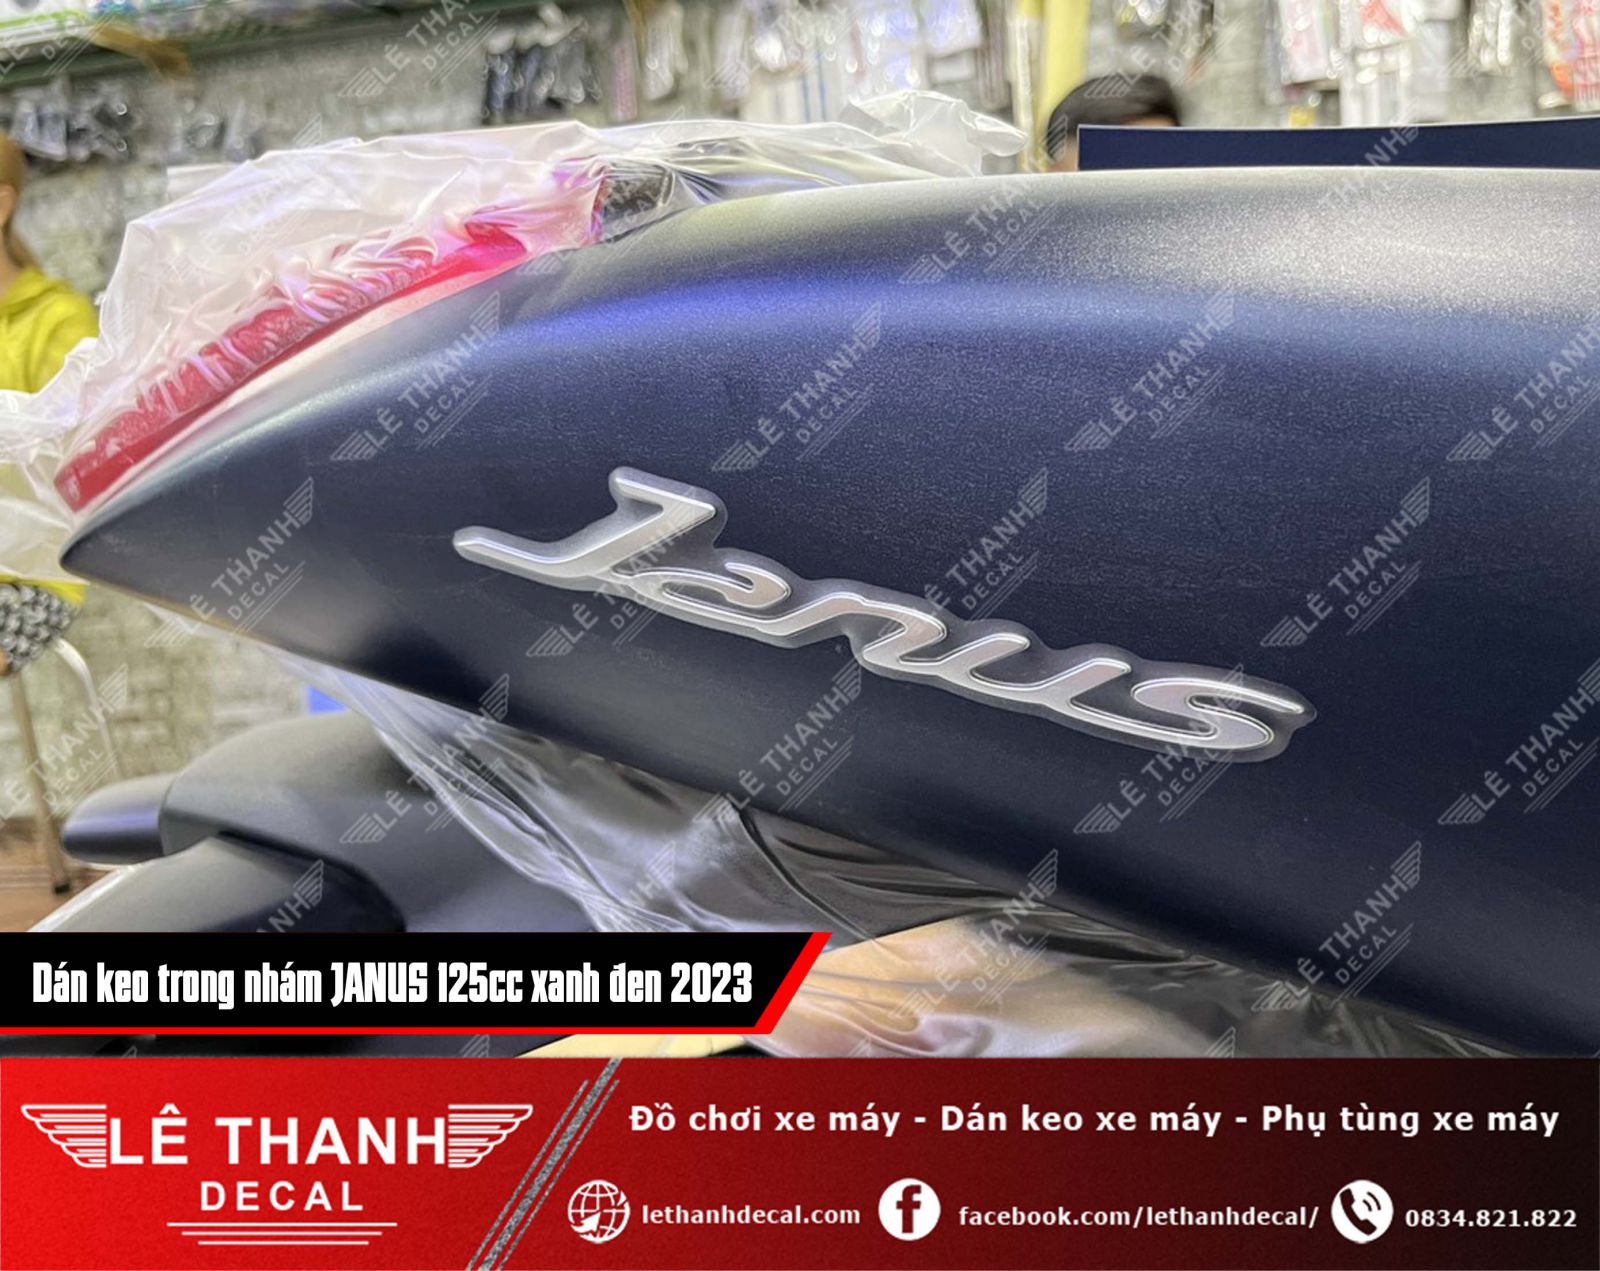 dán keo trong nhám cho xe Yamaha Janus 125cc xanh đen 2023